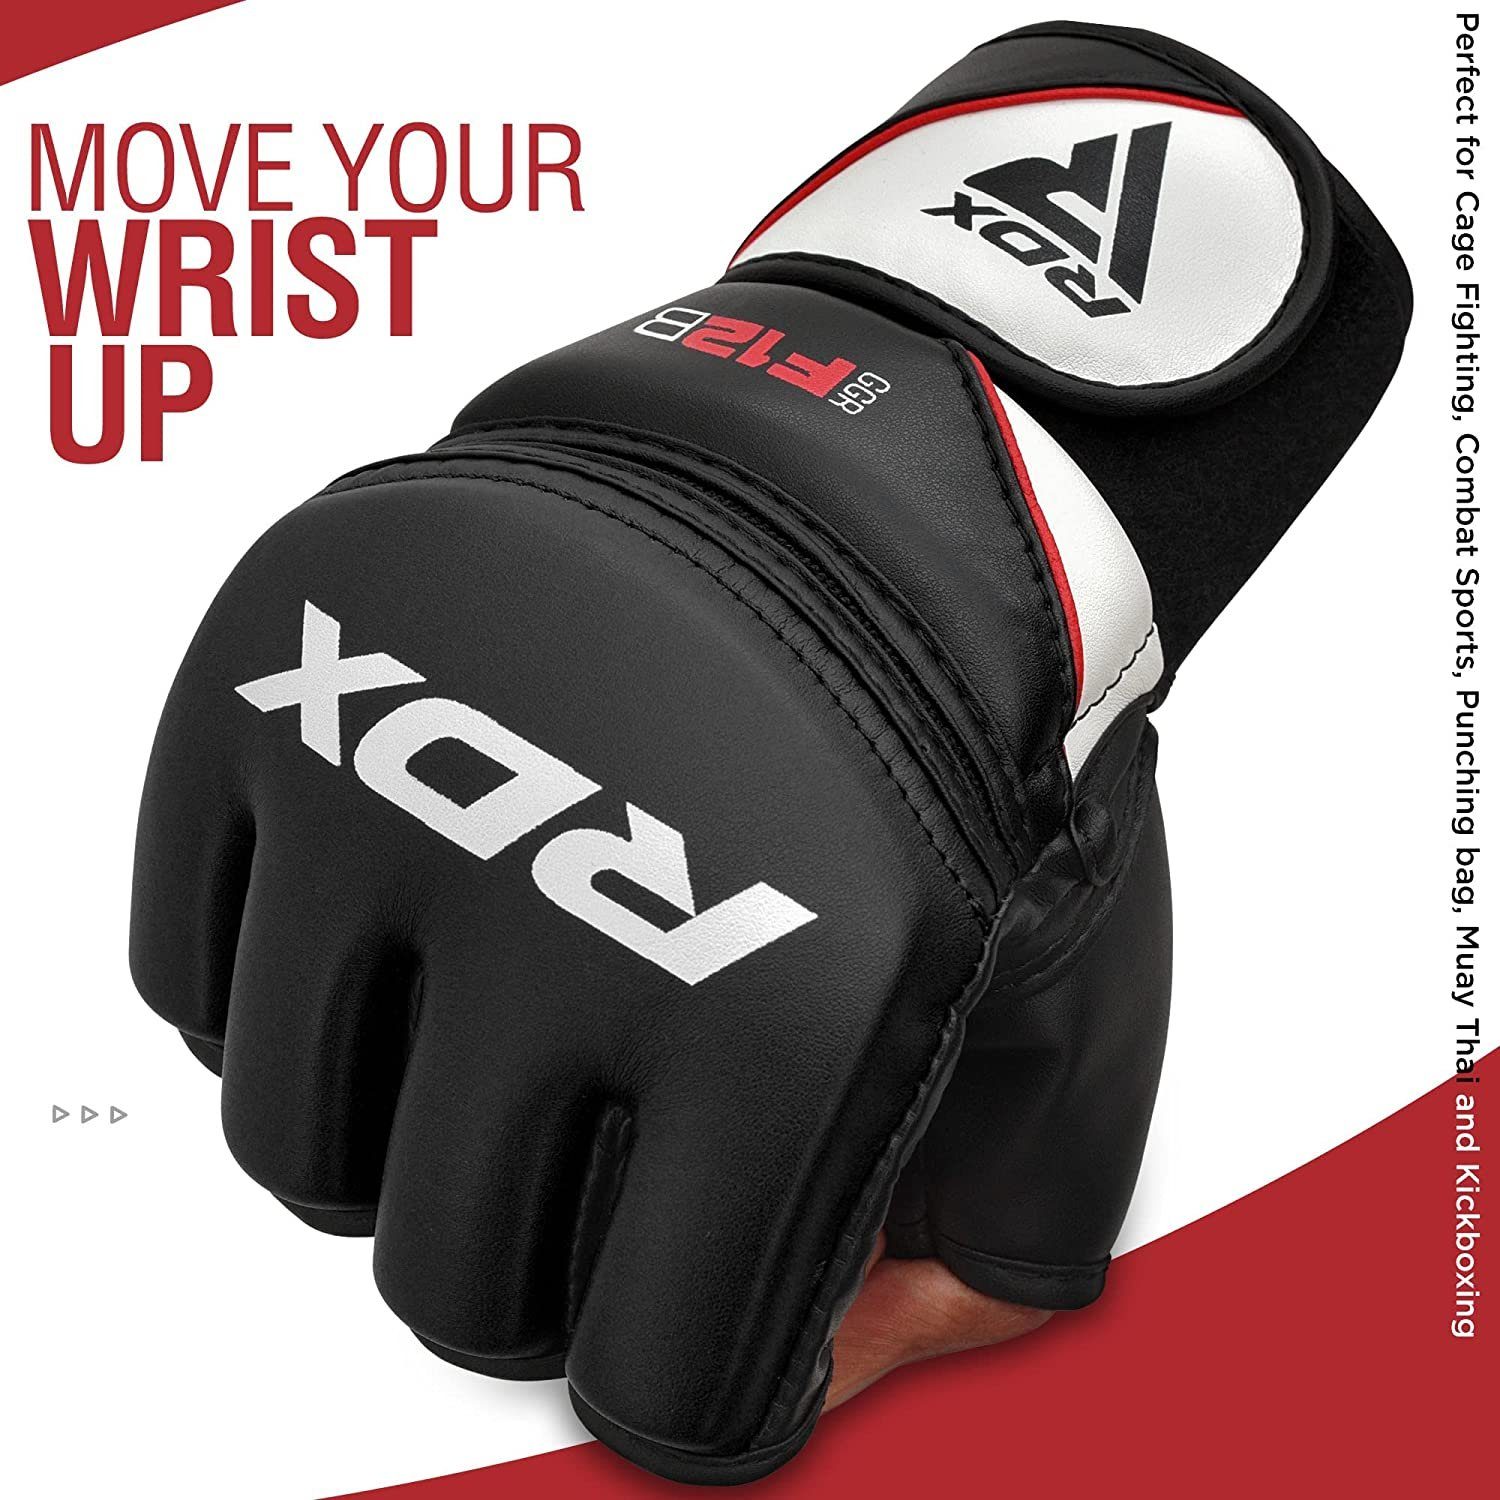 Black Sports RDX MMA Boxsack Gloves MMA-Handschuhe MMA RDX Kampfsport Professionelle Handschuhe,